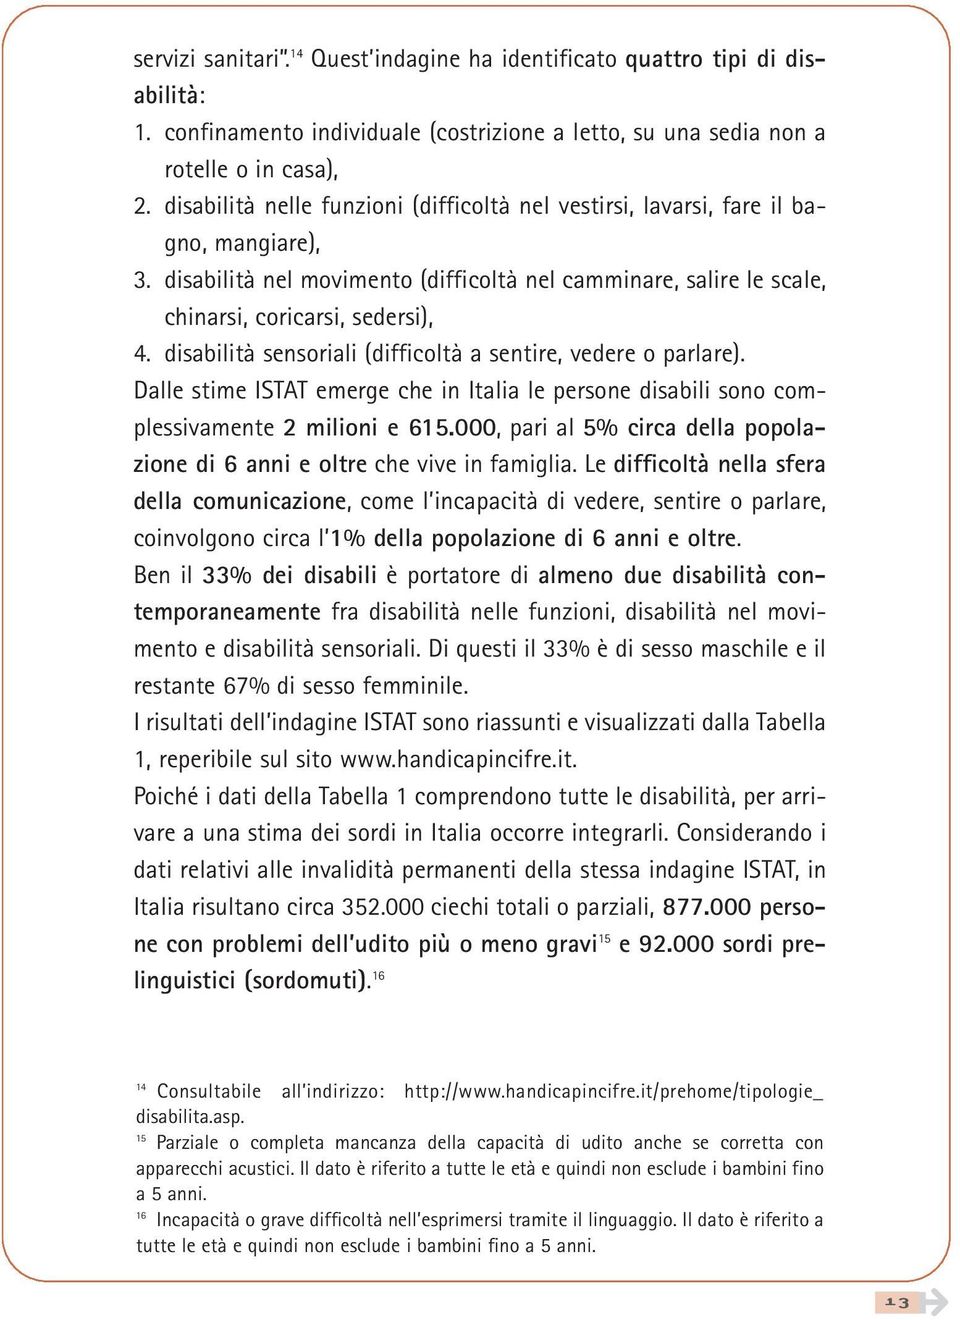 disabilità sensoriali (difficoltà a sentire, vedere o parlare). Dalle stime ISTAT emerge che in Italia le persone disabili sono complessivamente 2 milioni e 615.